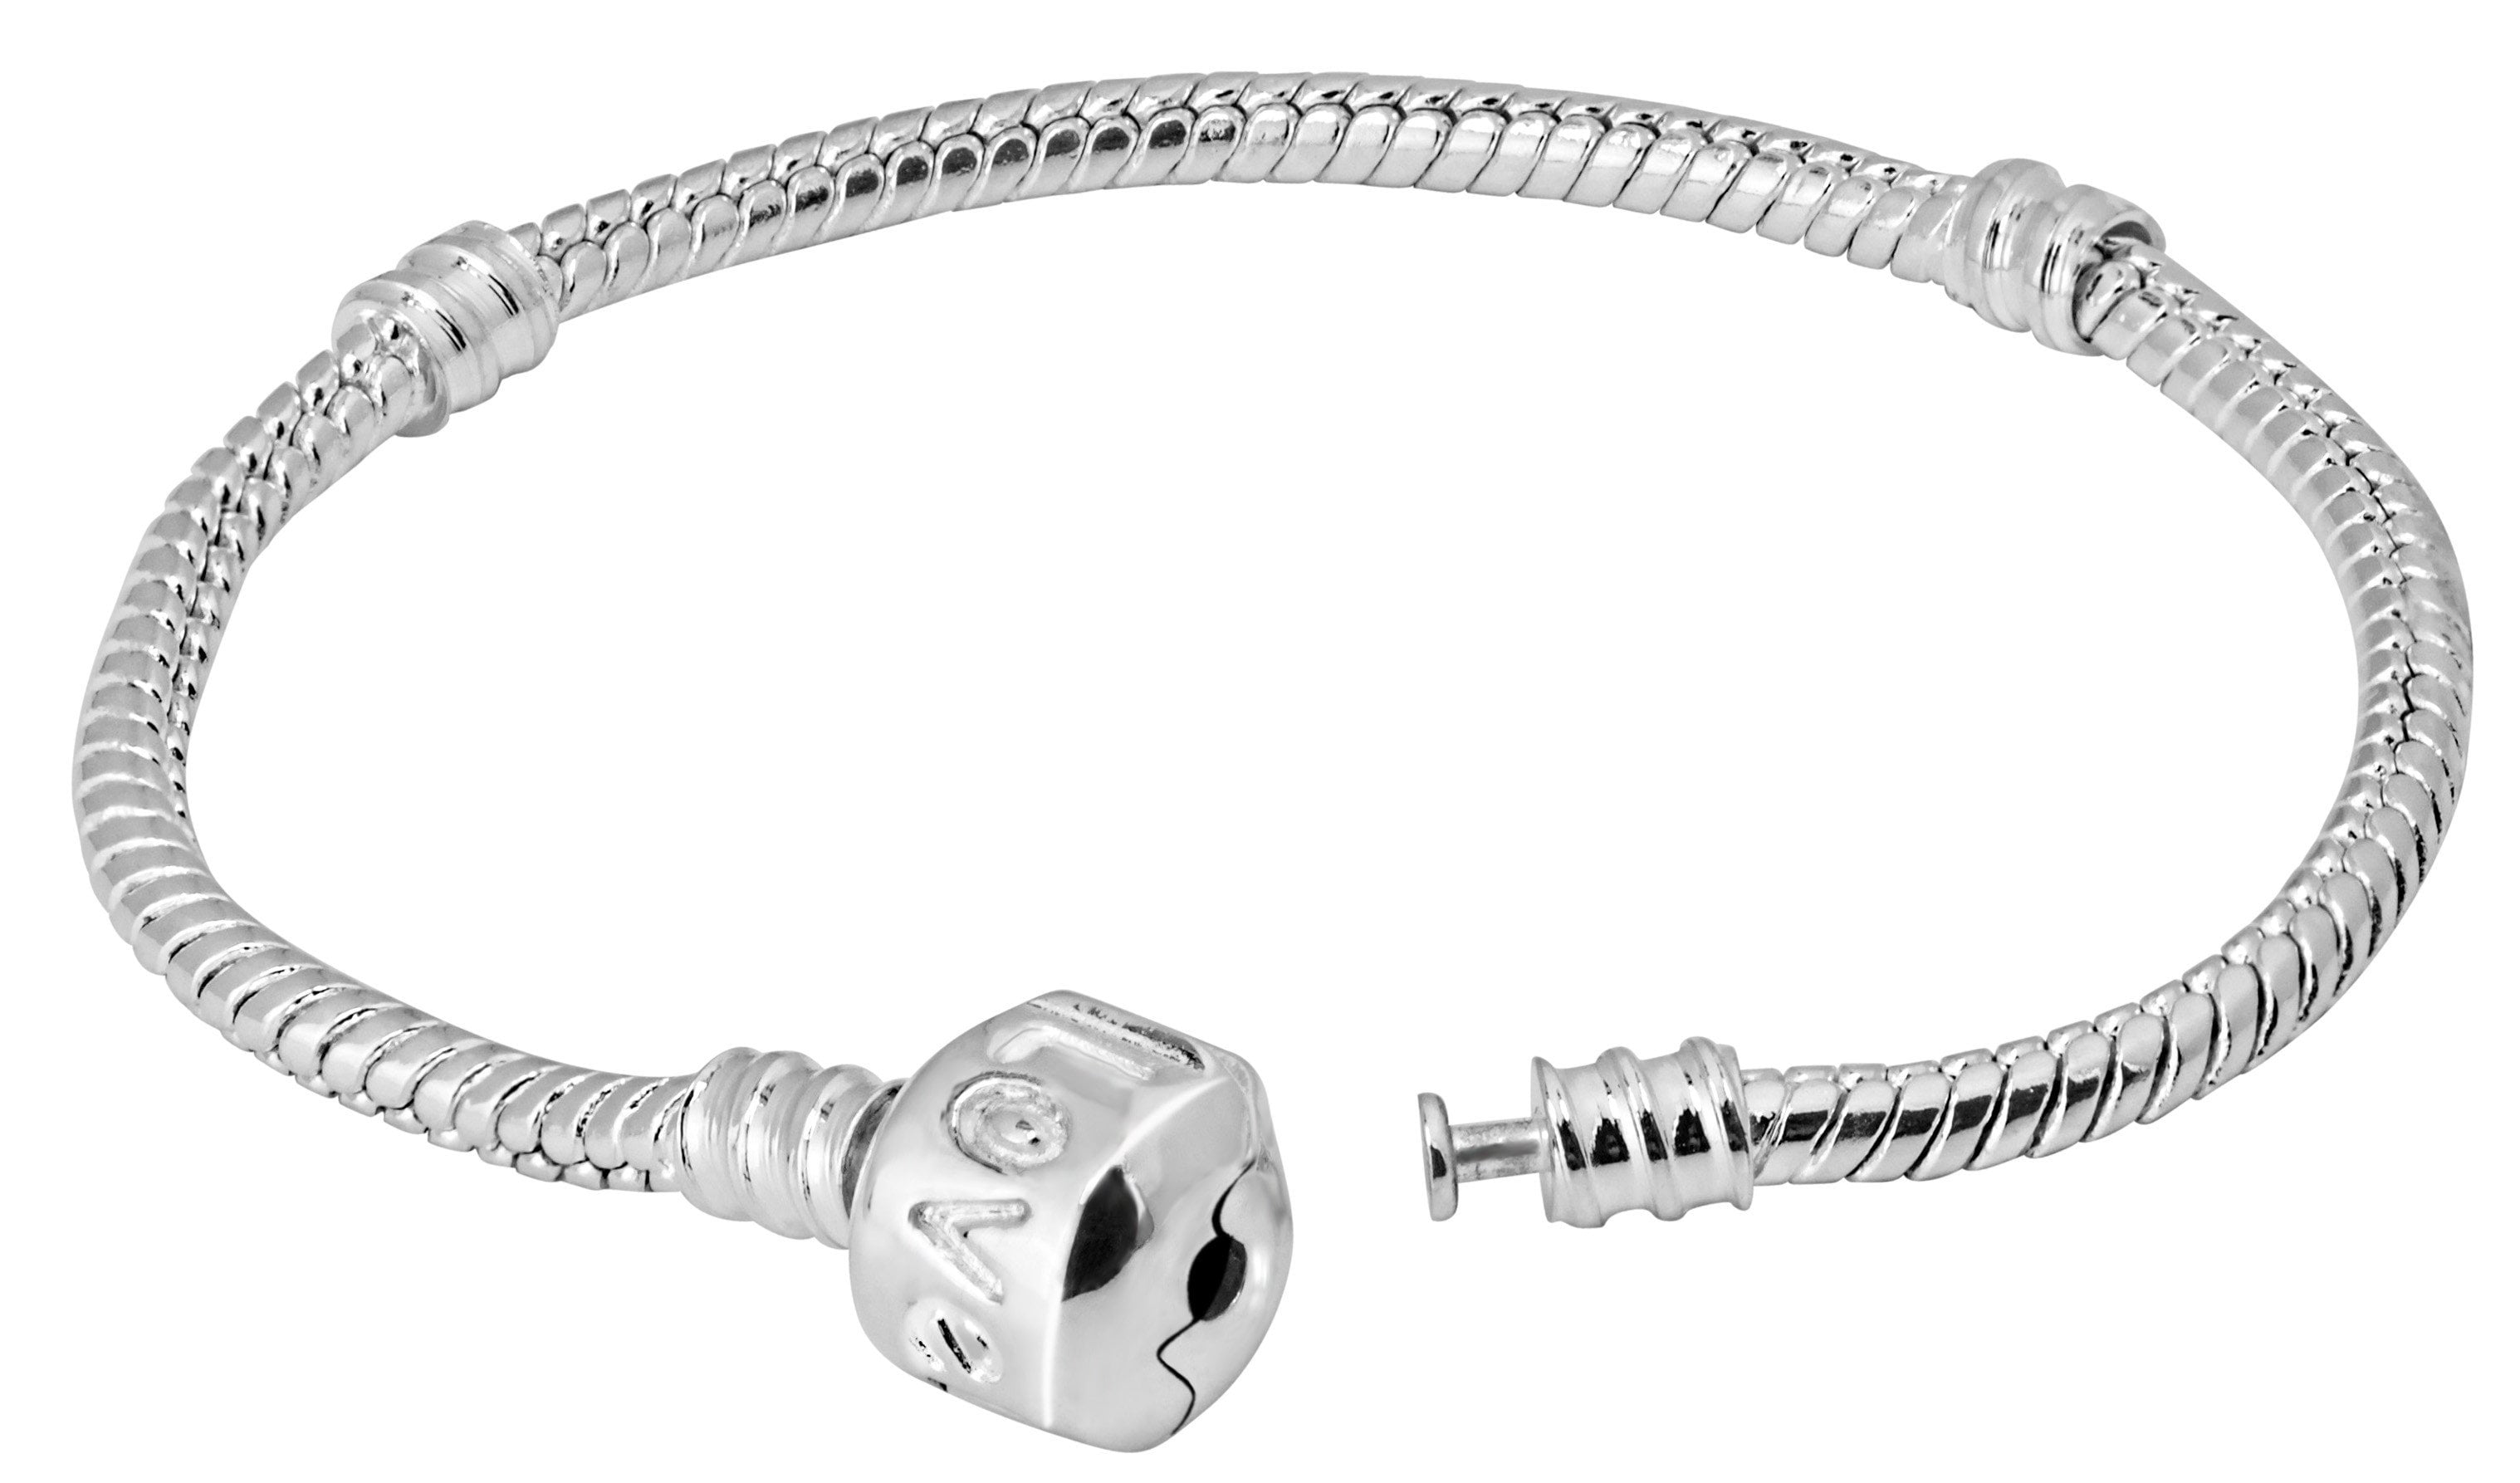 European style Chakra 7 Colors Lovely Sterling Silver Charm Bracelet Handmade. 